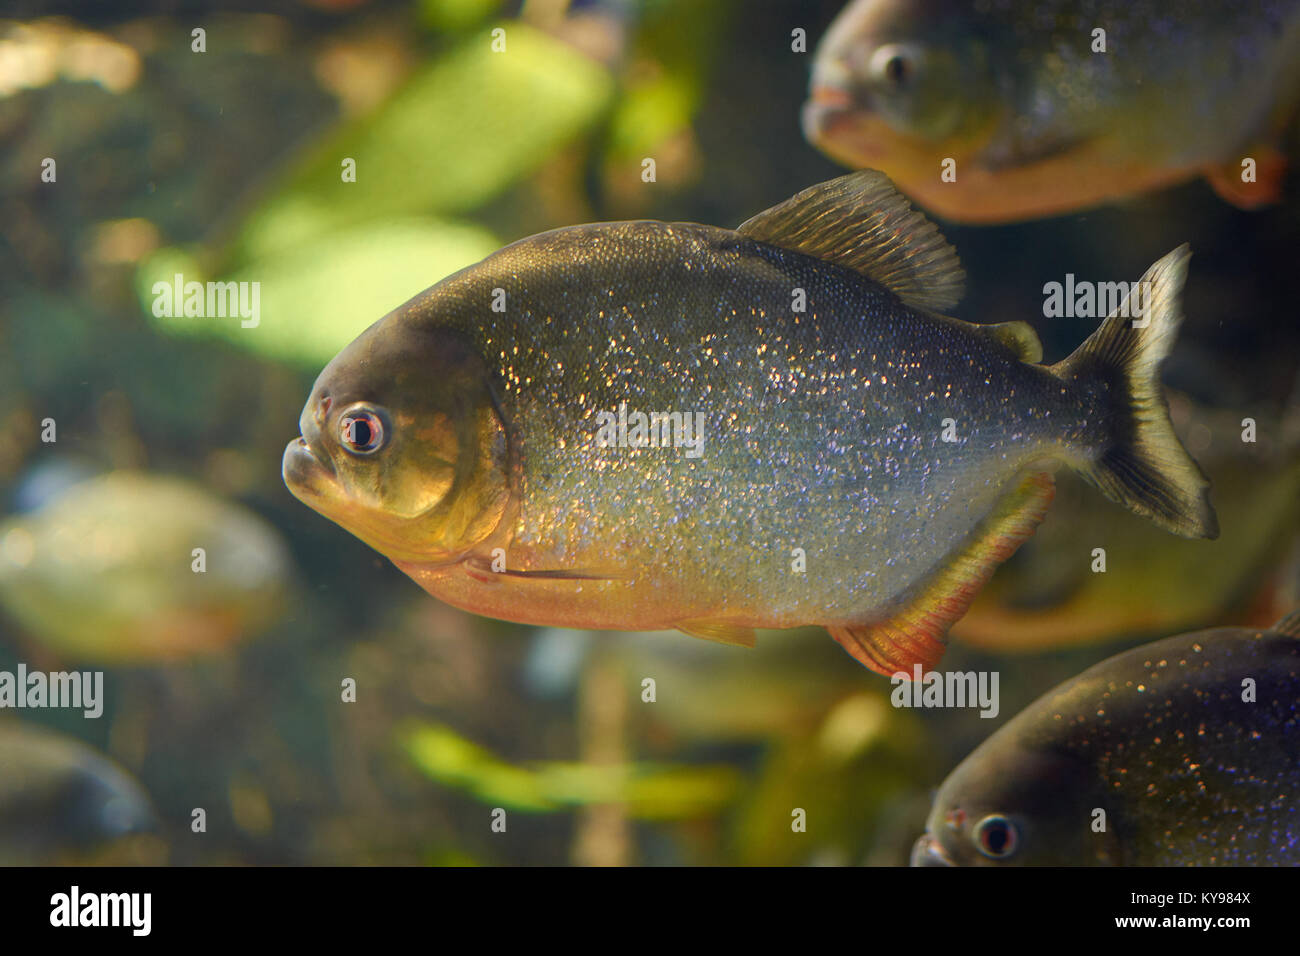 Miti circondano piranha rosso in un acquario Foto Stock